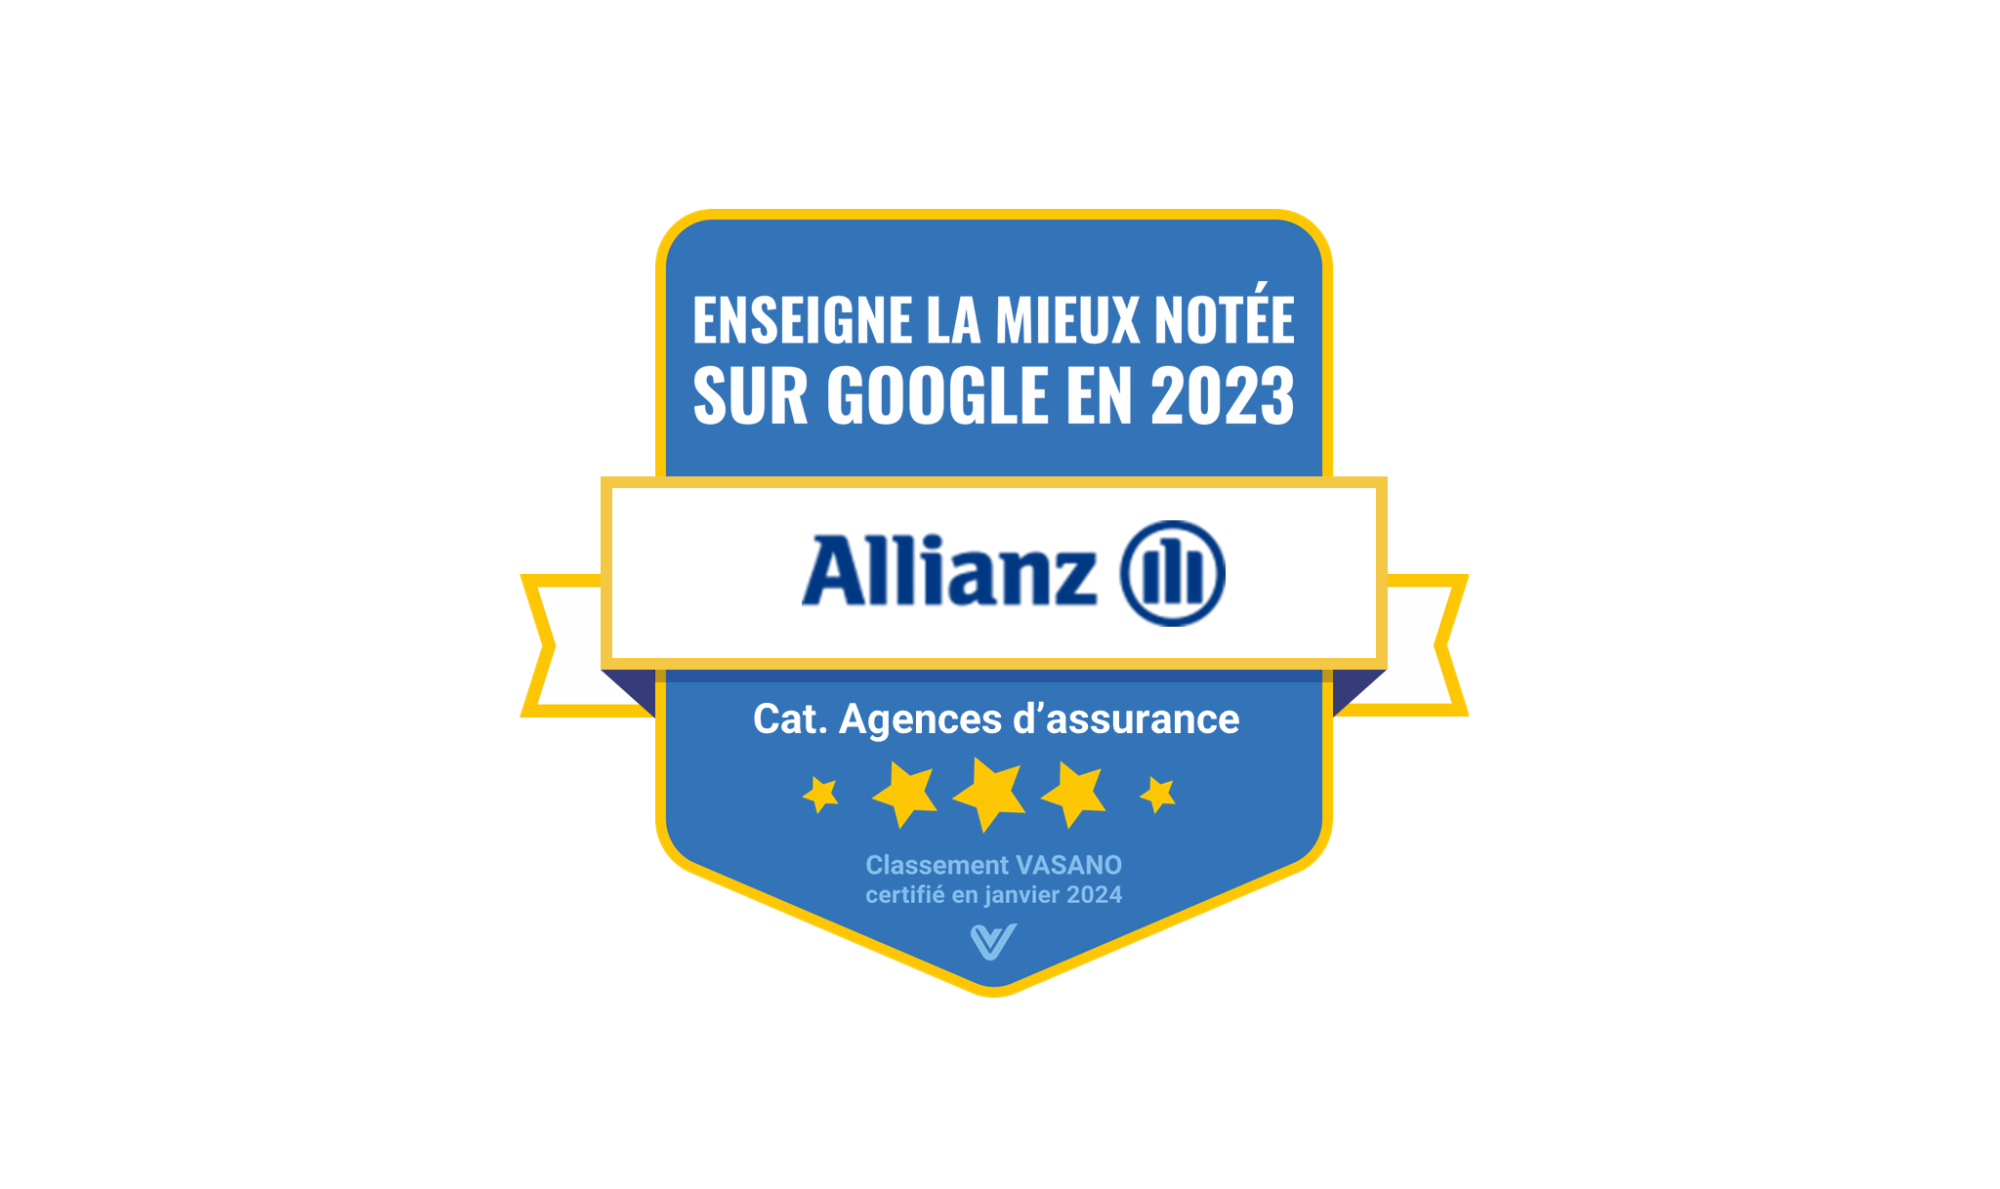 Allianz France prend la première place du classement des agences d’assurance les mieux notées sur Google en 2023